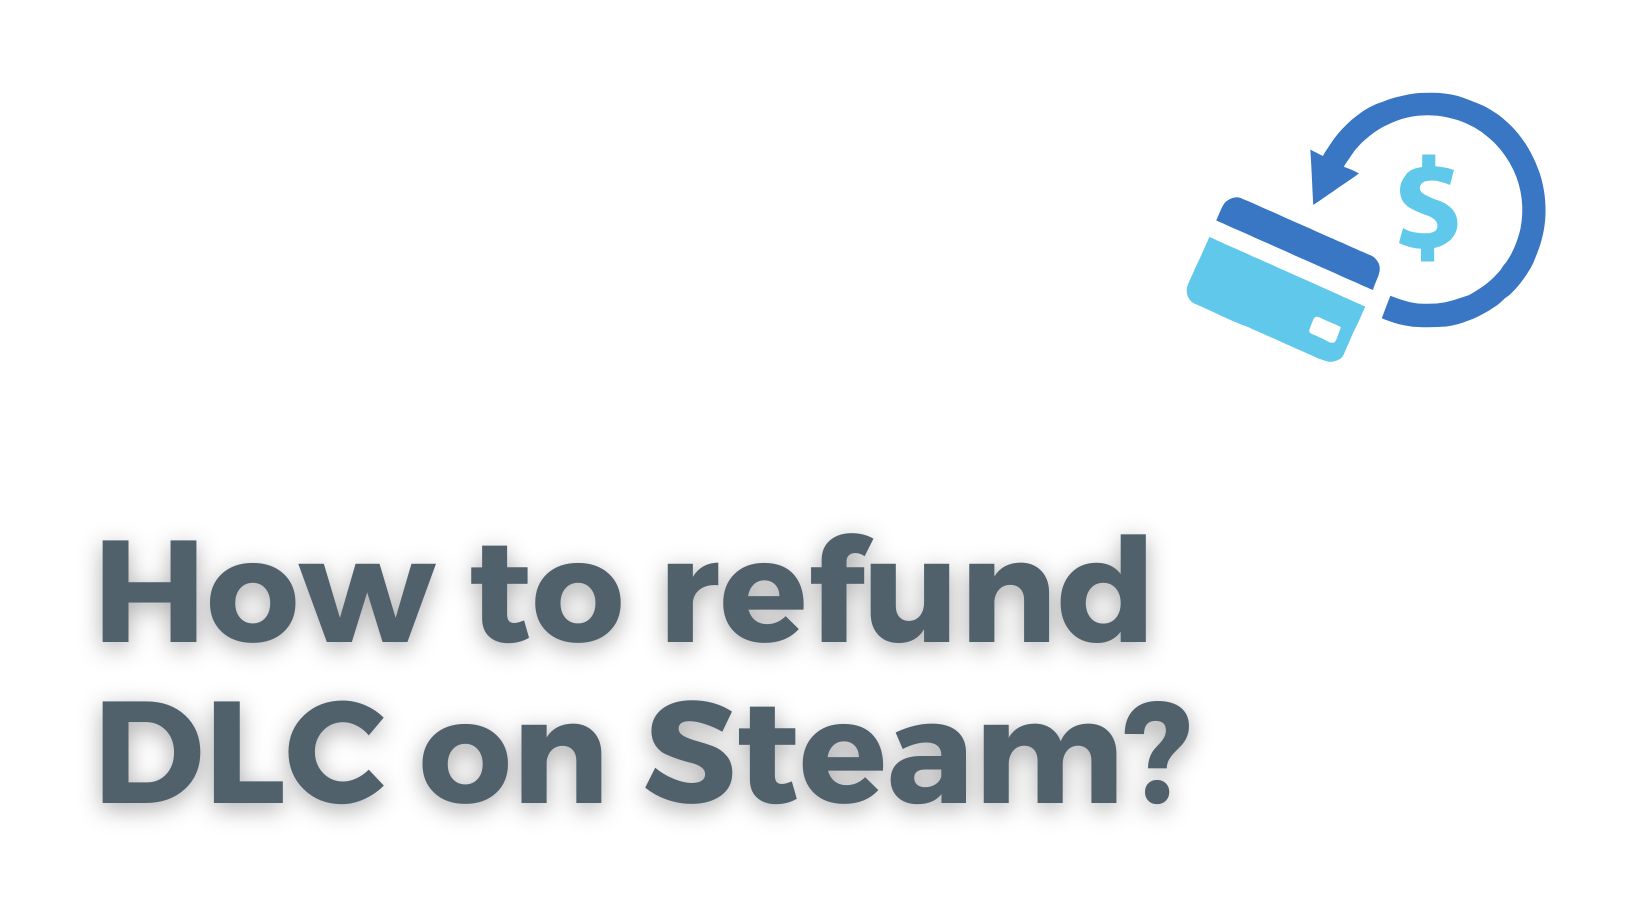 How to refund DLC on Steam?